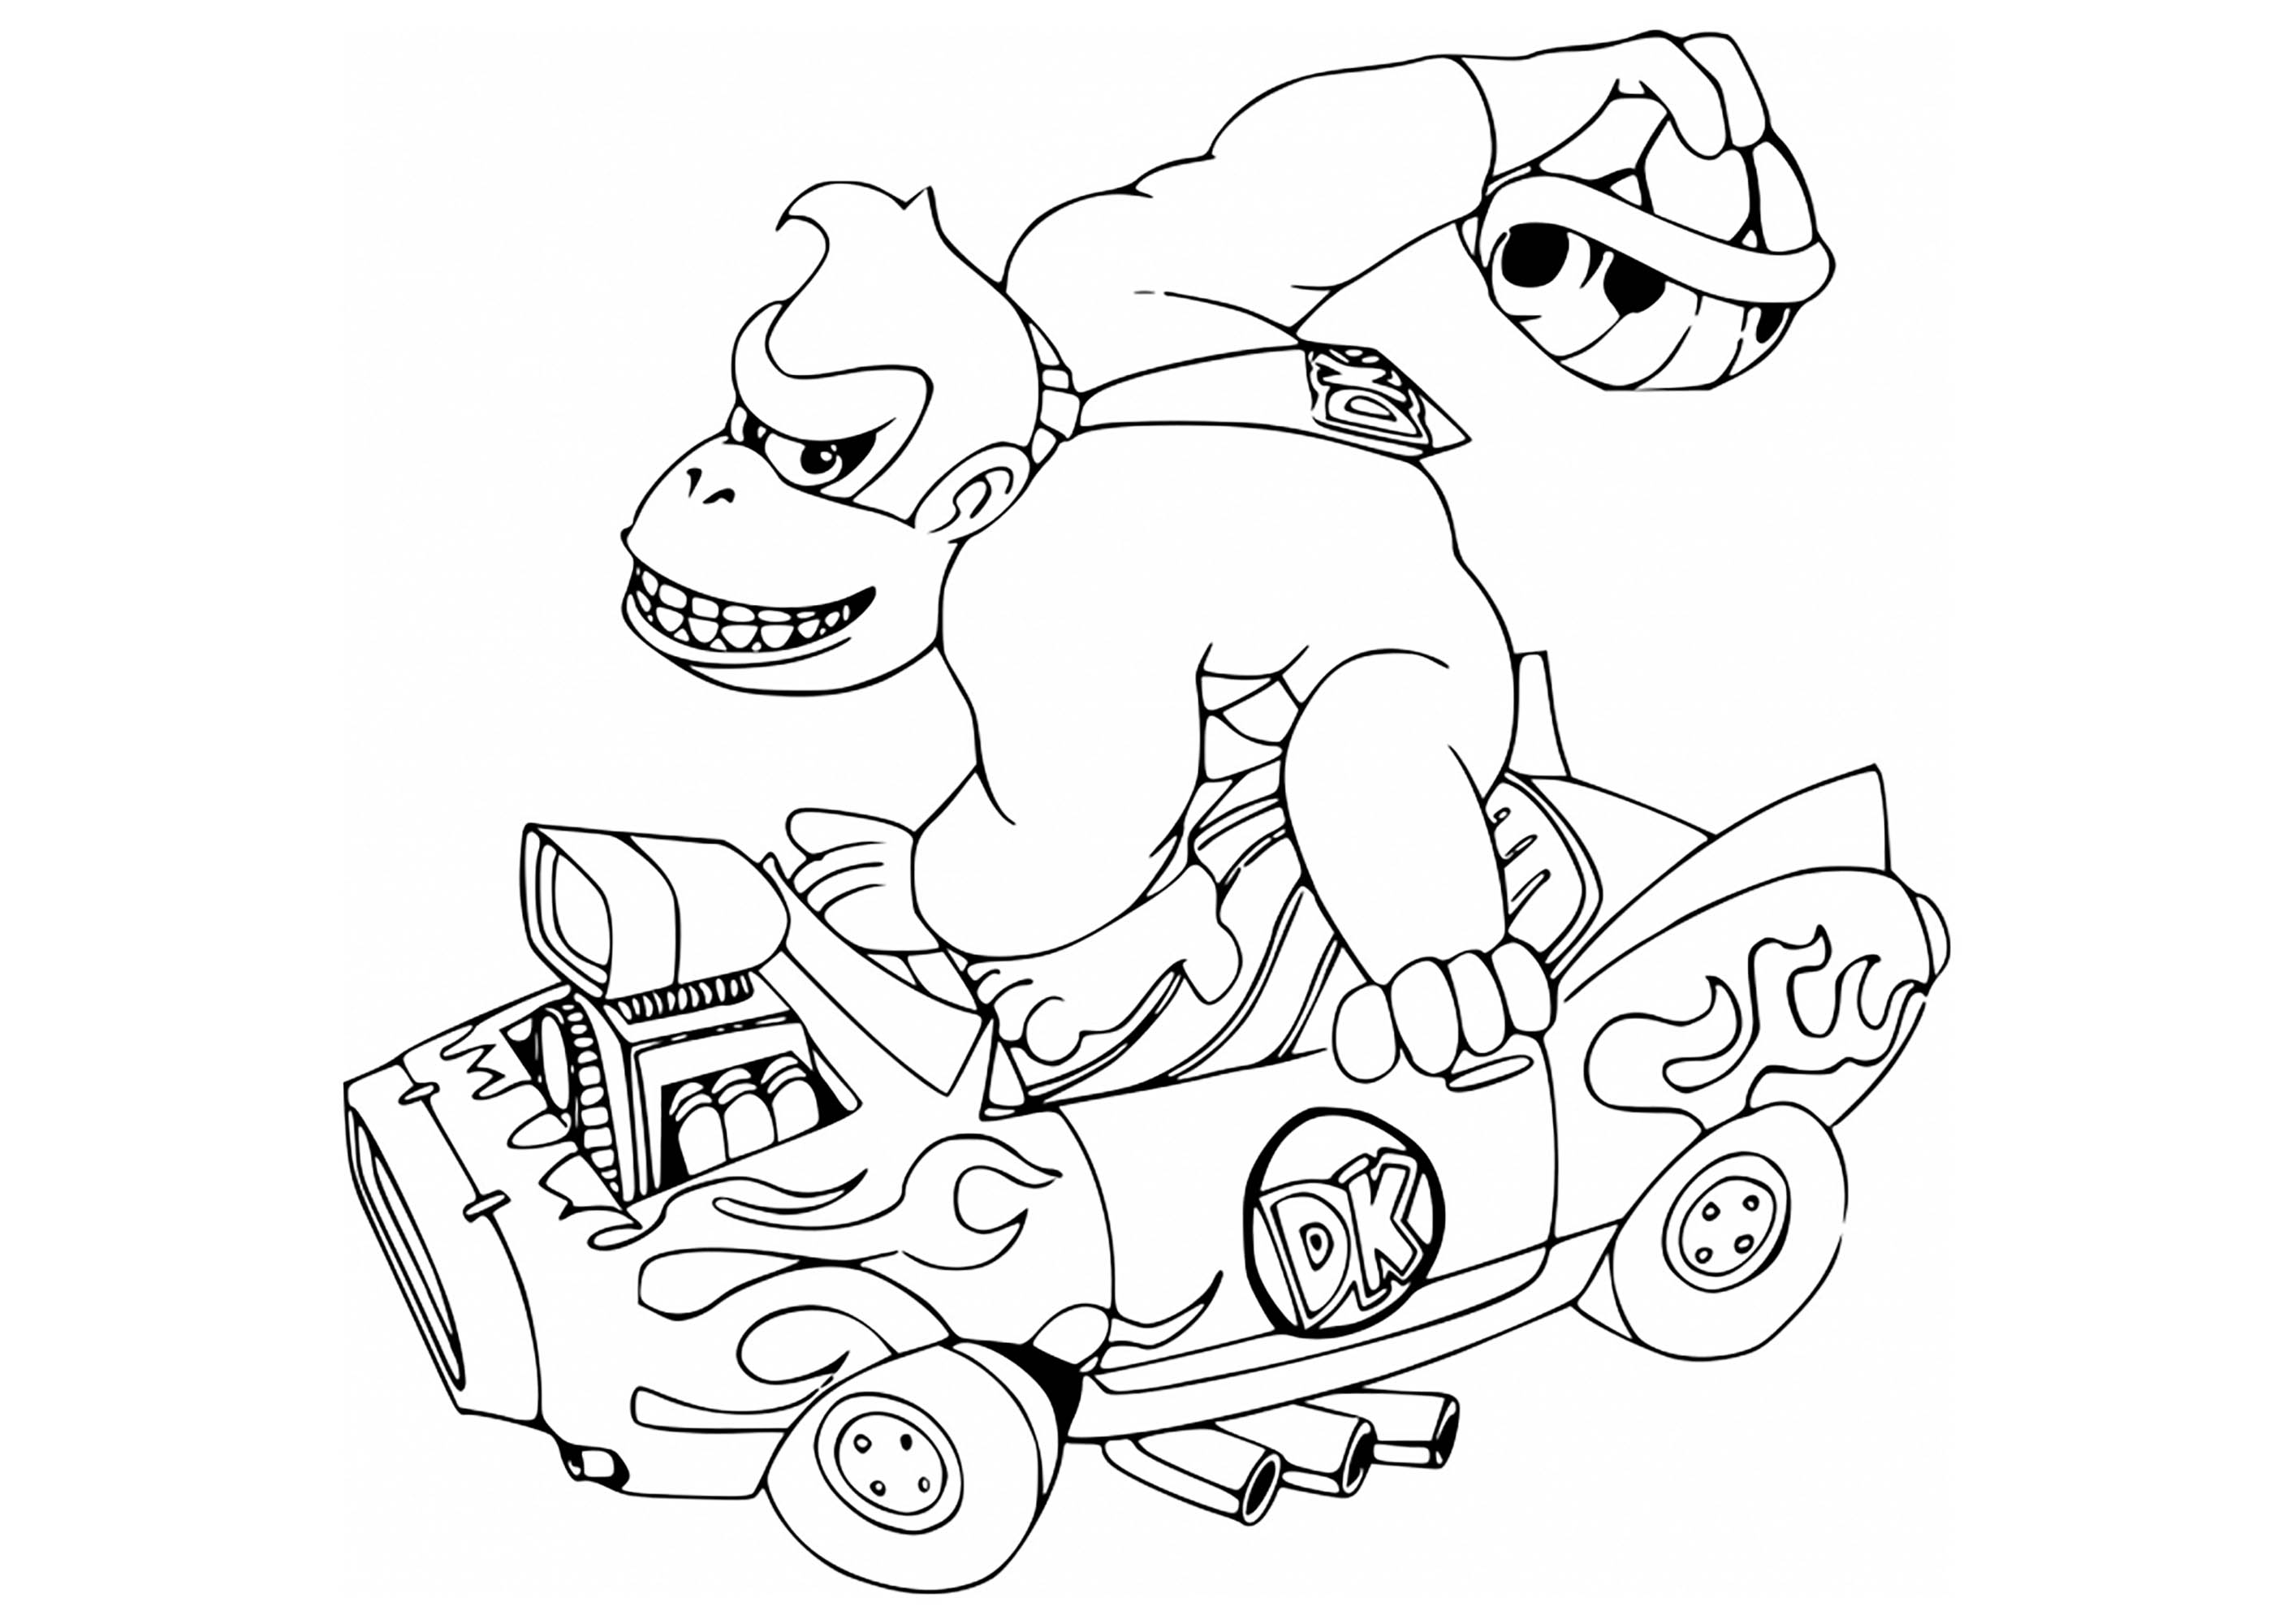 Mario Kart coloring page : Donkey Kong Kart